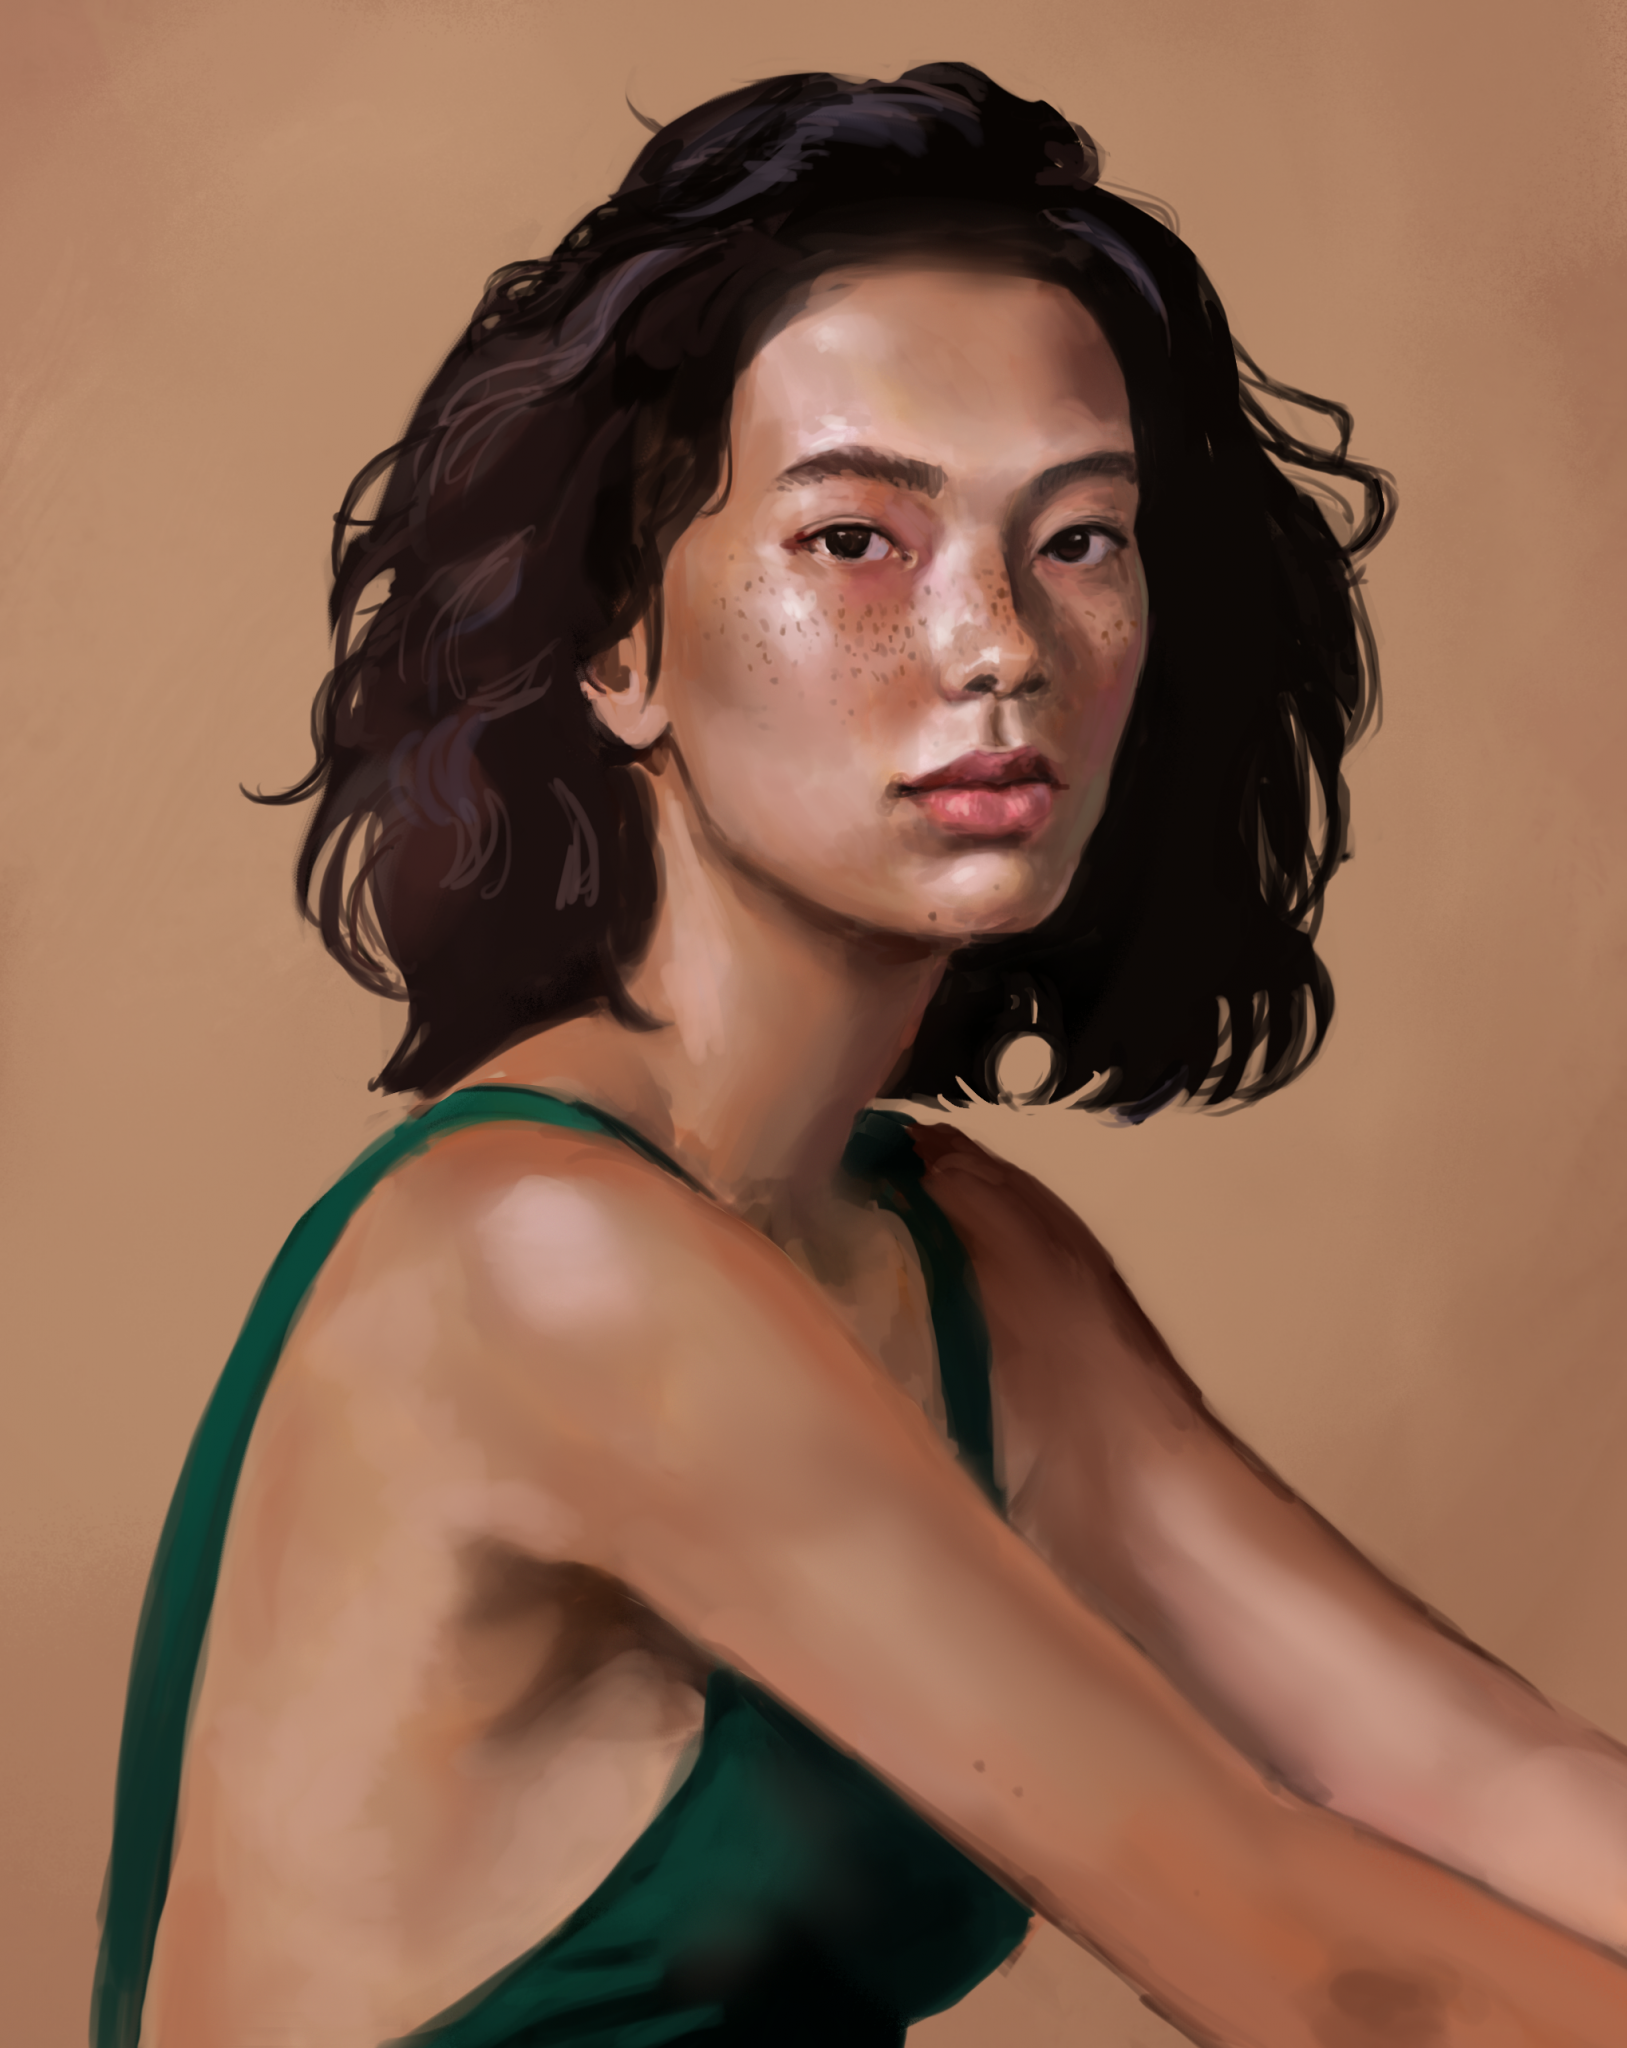 Gemalte Portrait-Illustration von einer jungen asiatischen Frau